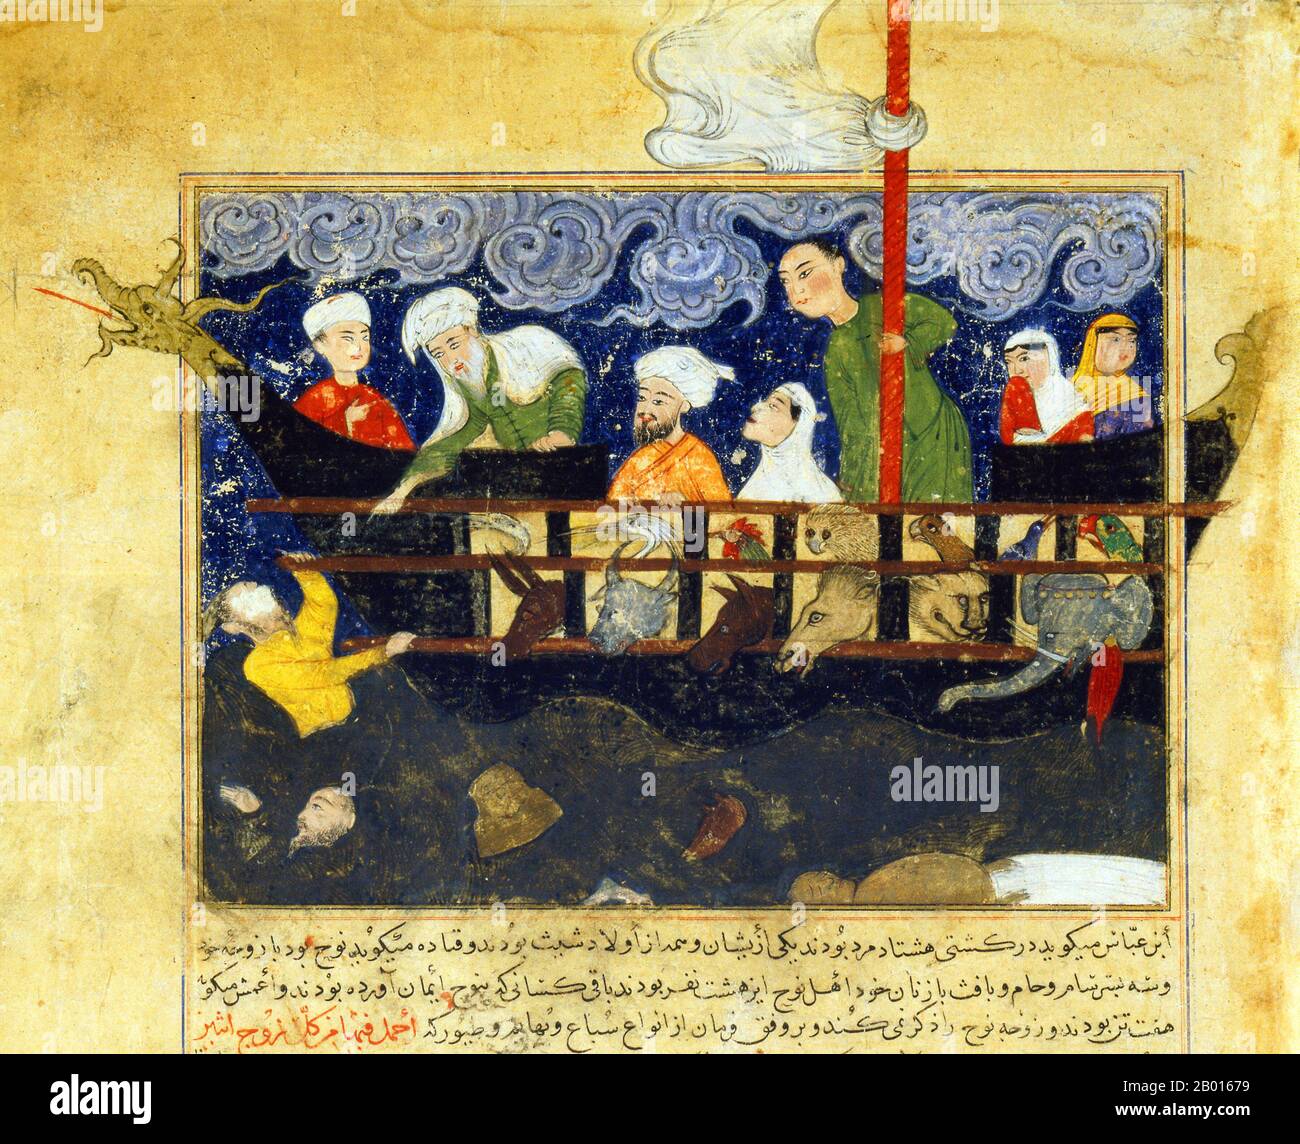 Afghanistan: Detail eines Miniaturbildes der Arche Noah, aus Hafiz-i Abrus Majma al-tawarikh, c. 1425. Timurs Sohn Shah Rukh (1405-1447) befahl dem Historiker Hafiz-i Abru, eine Fortsetzung der berühmten Weltgeschichte Rashid al-DIN, Jami al-tawarikh, zu schreiben. Wie die Il-Khaniden ging es auch der Timuriden-Dynastie darum, ihr Recht auf Herrschaft zu legitimieren, und Hafiz-i Abrus „Eine Sammlung von Geschichten“ umfasst eine Periode, die die Zeit von Shah Rukh selbst einschloss. Stockfoto